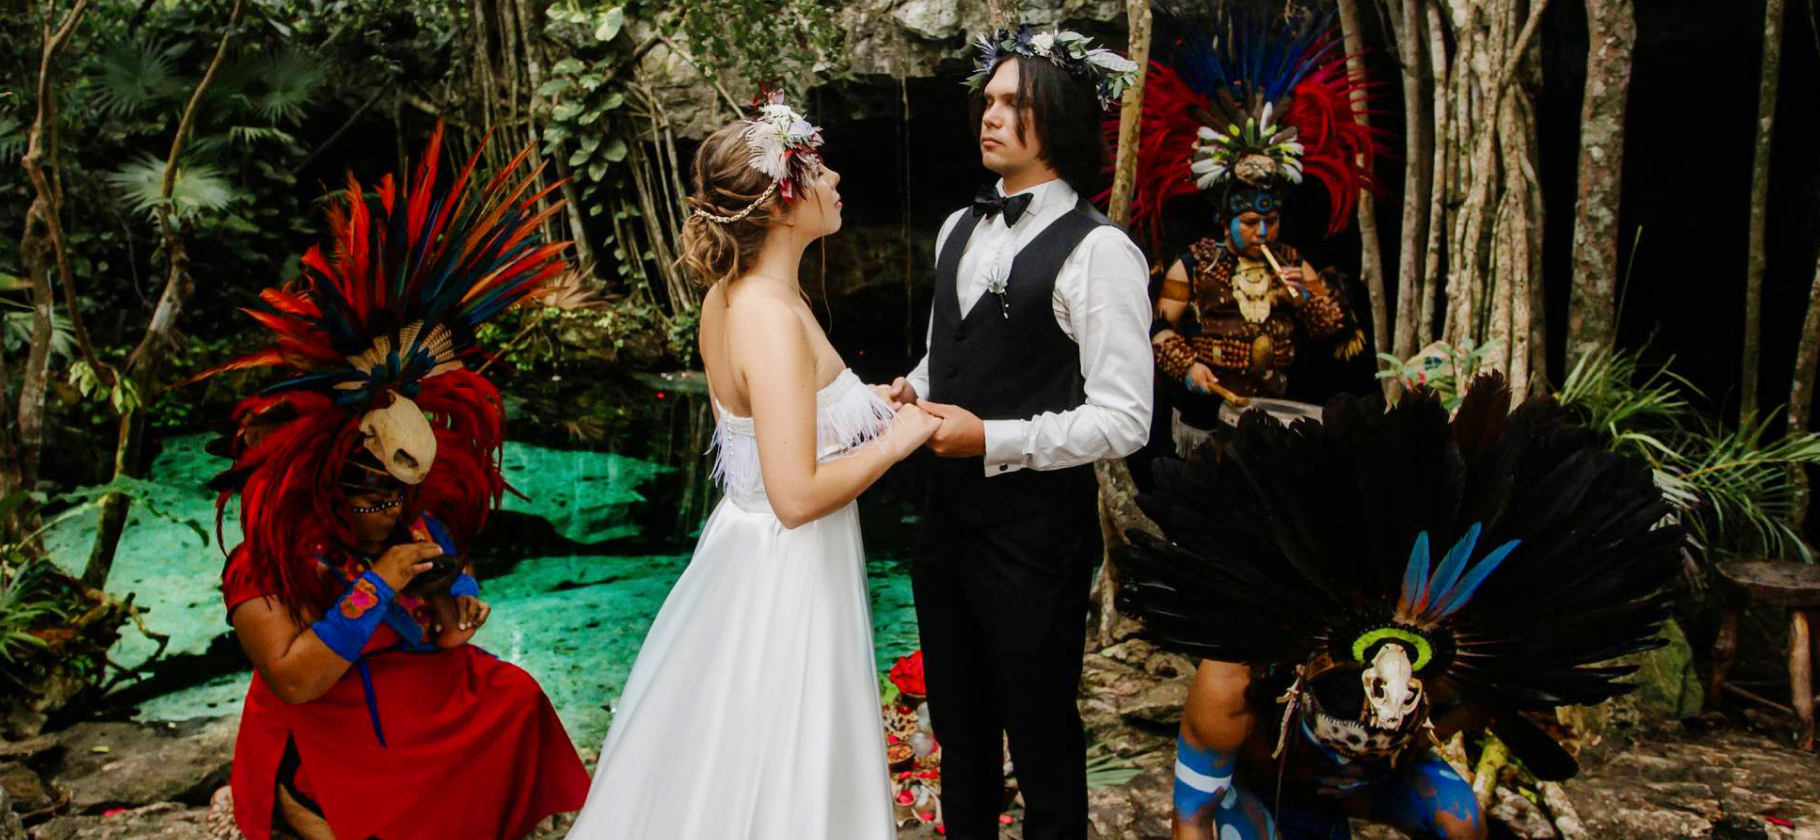 «Лучший день в нашей жизни»: как мы поженились в Мексике за 420 000 ₽